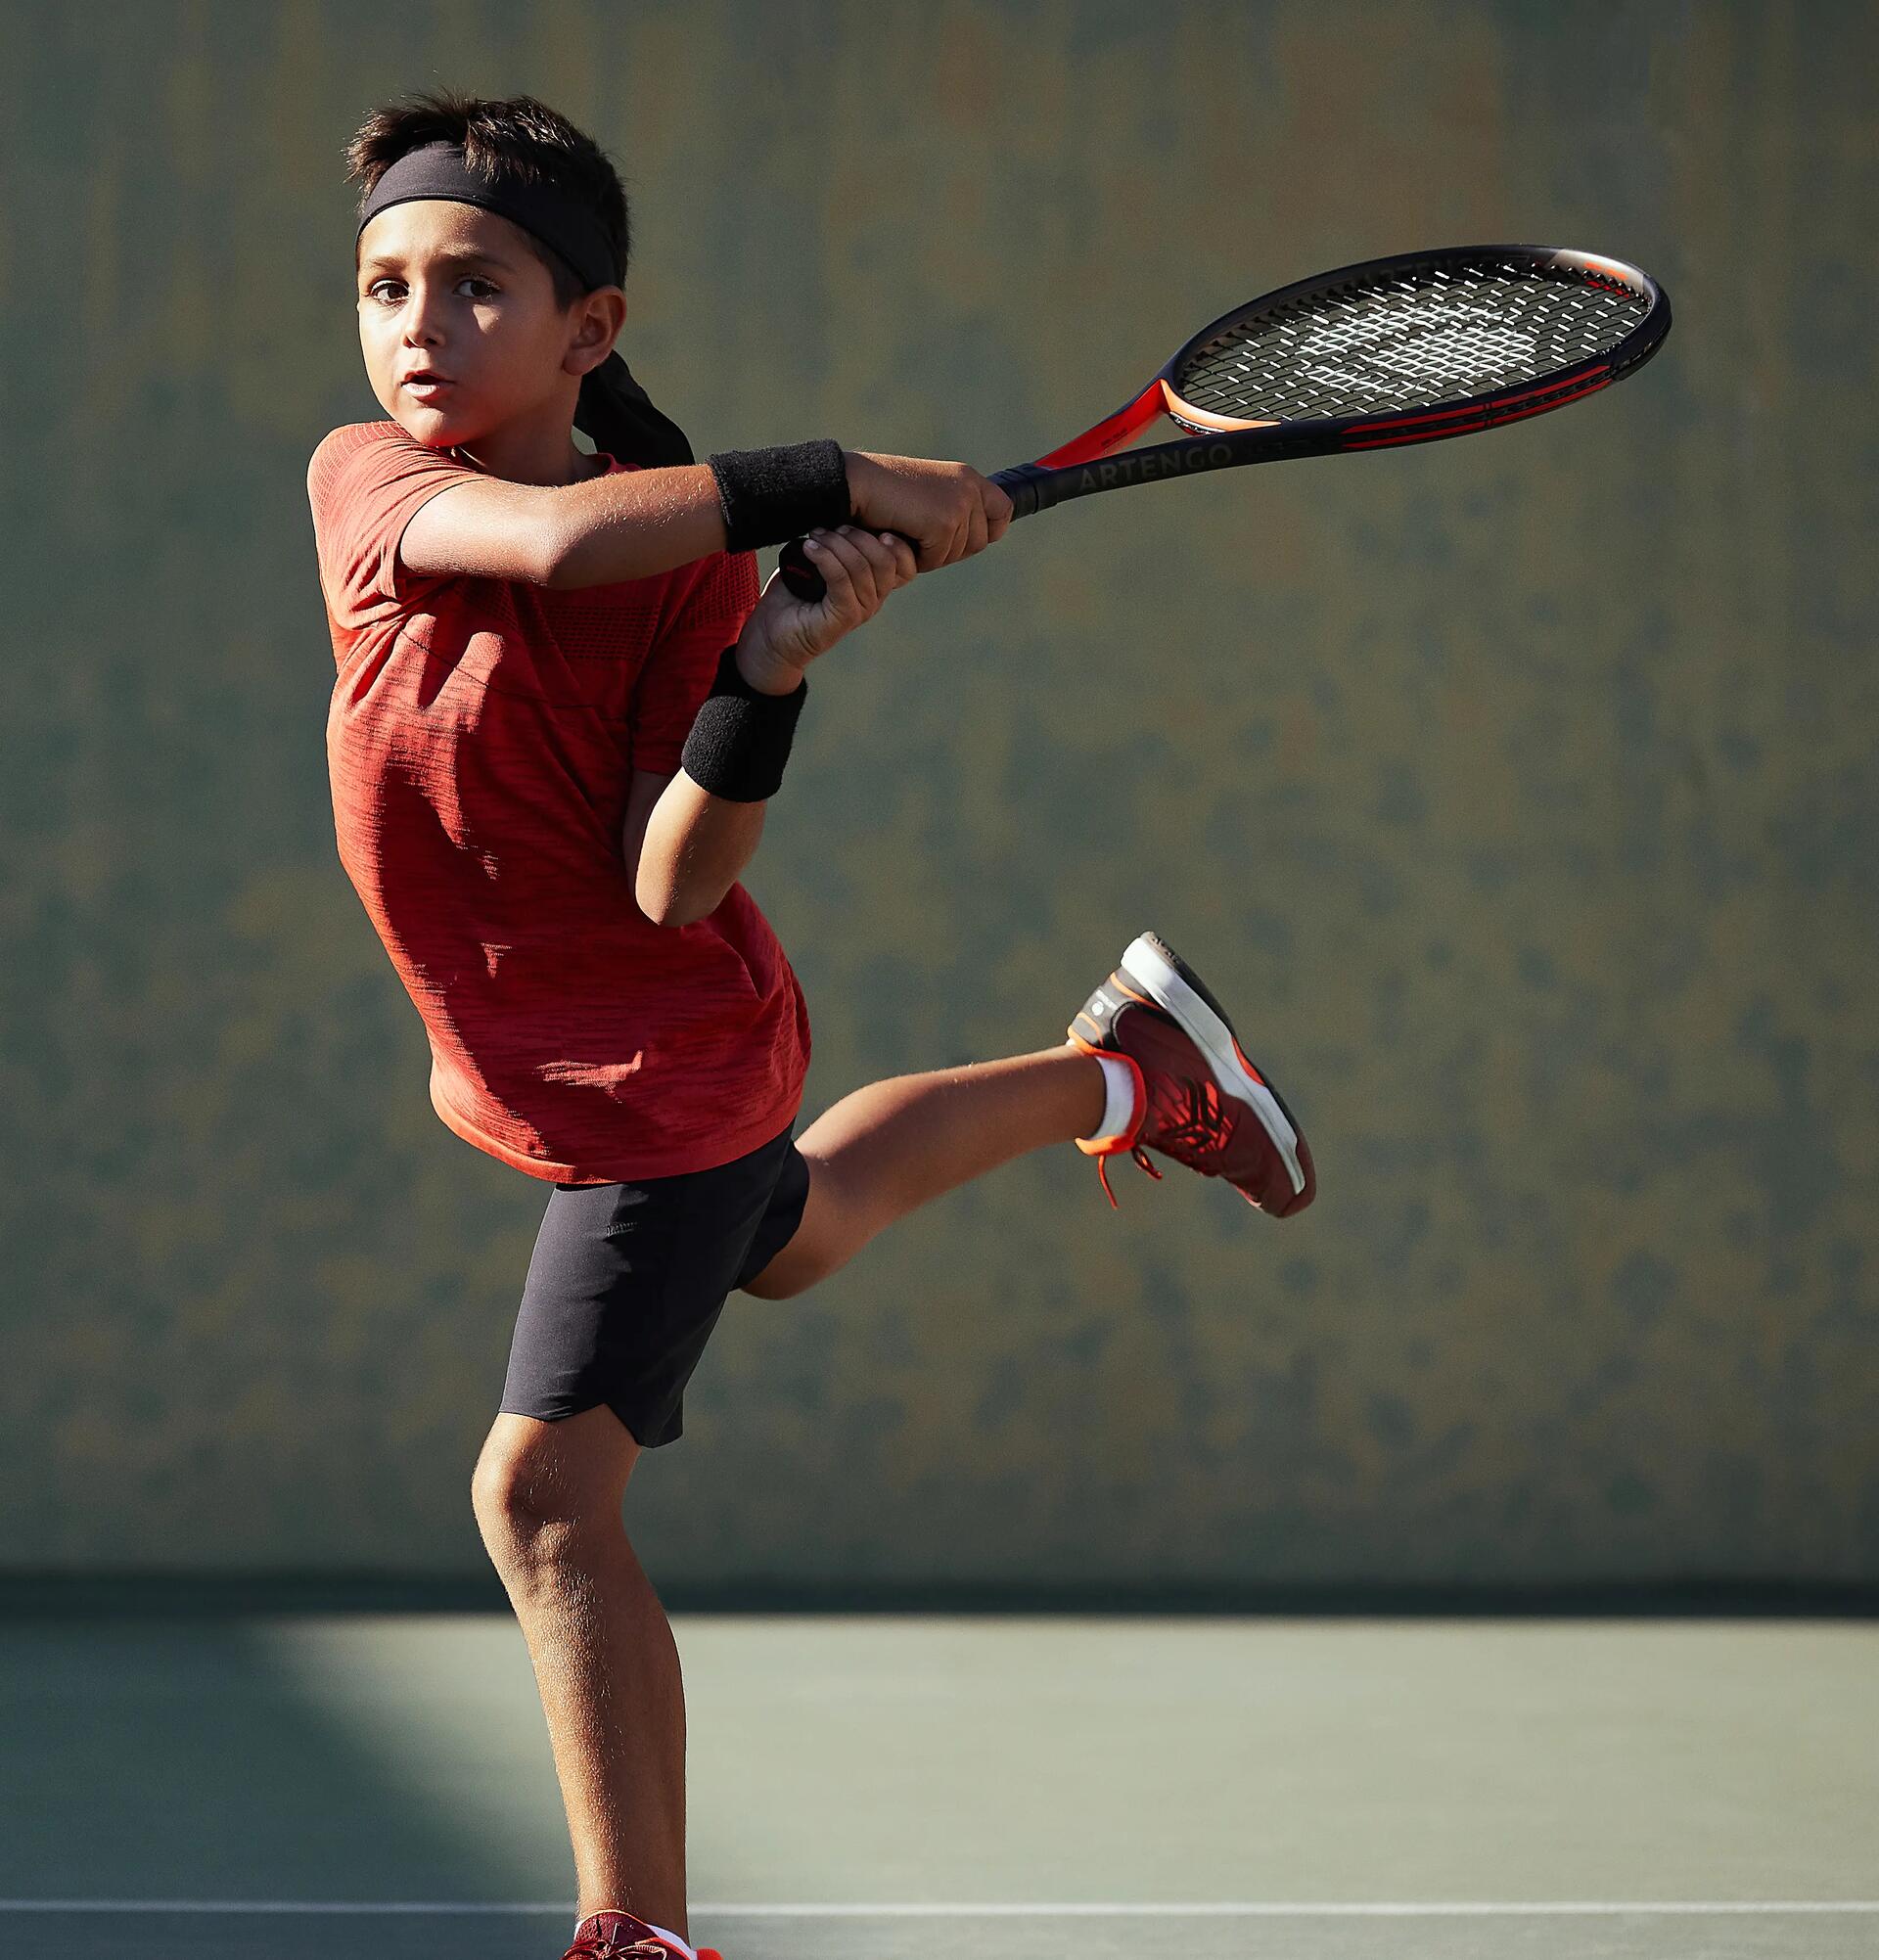 Hoe kies ik een tennisracket voor kinderen?